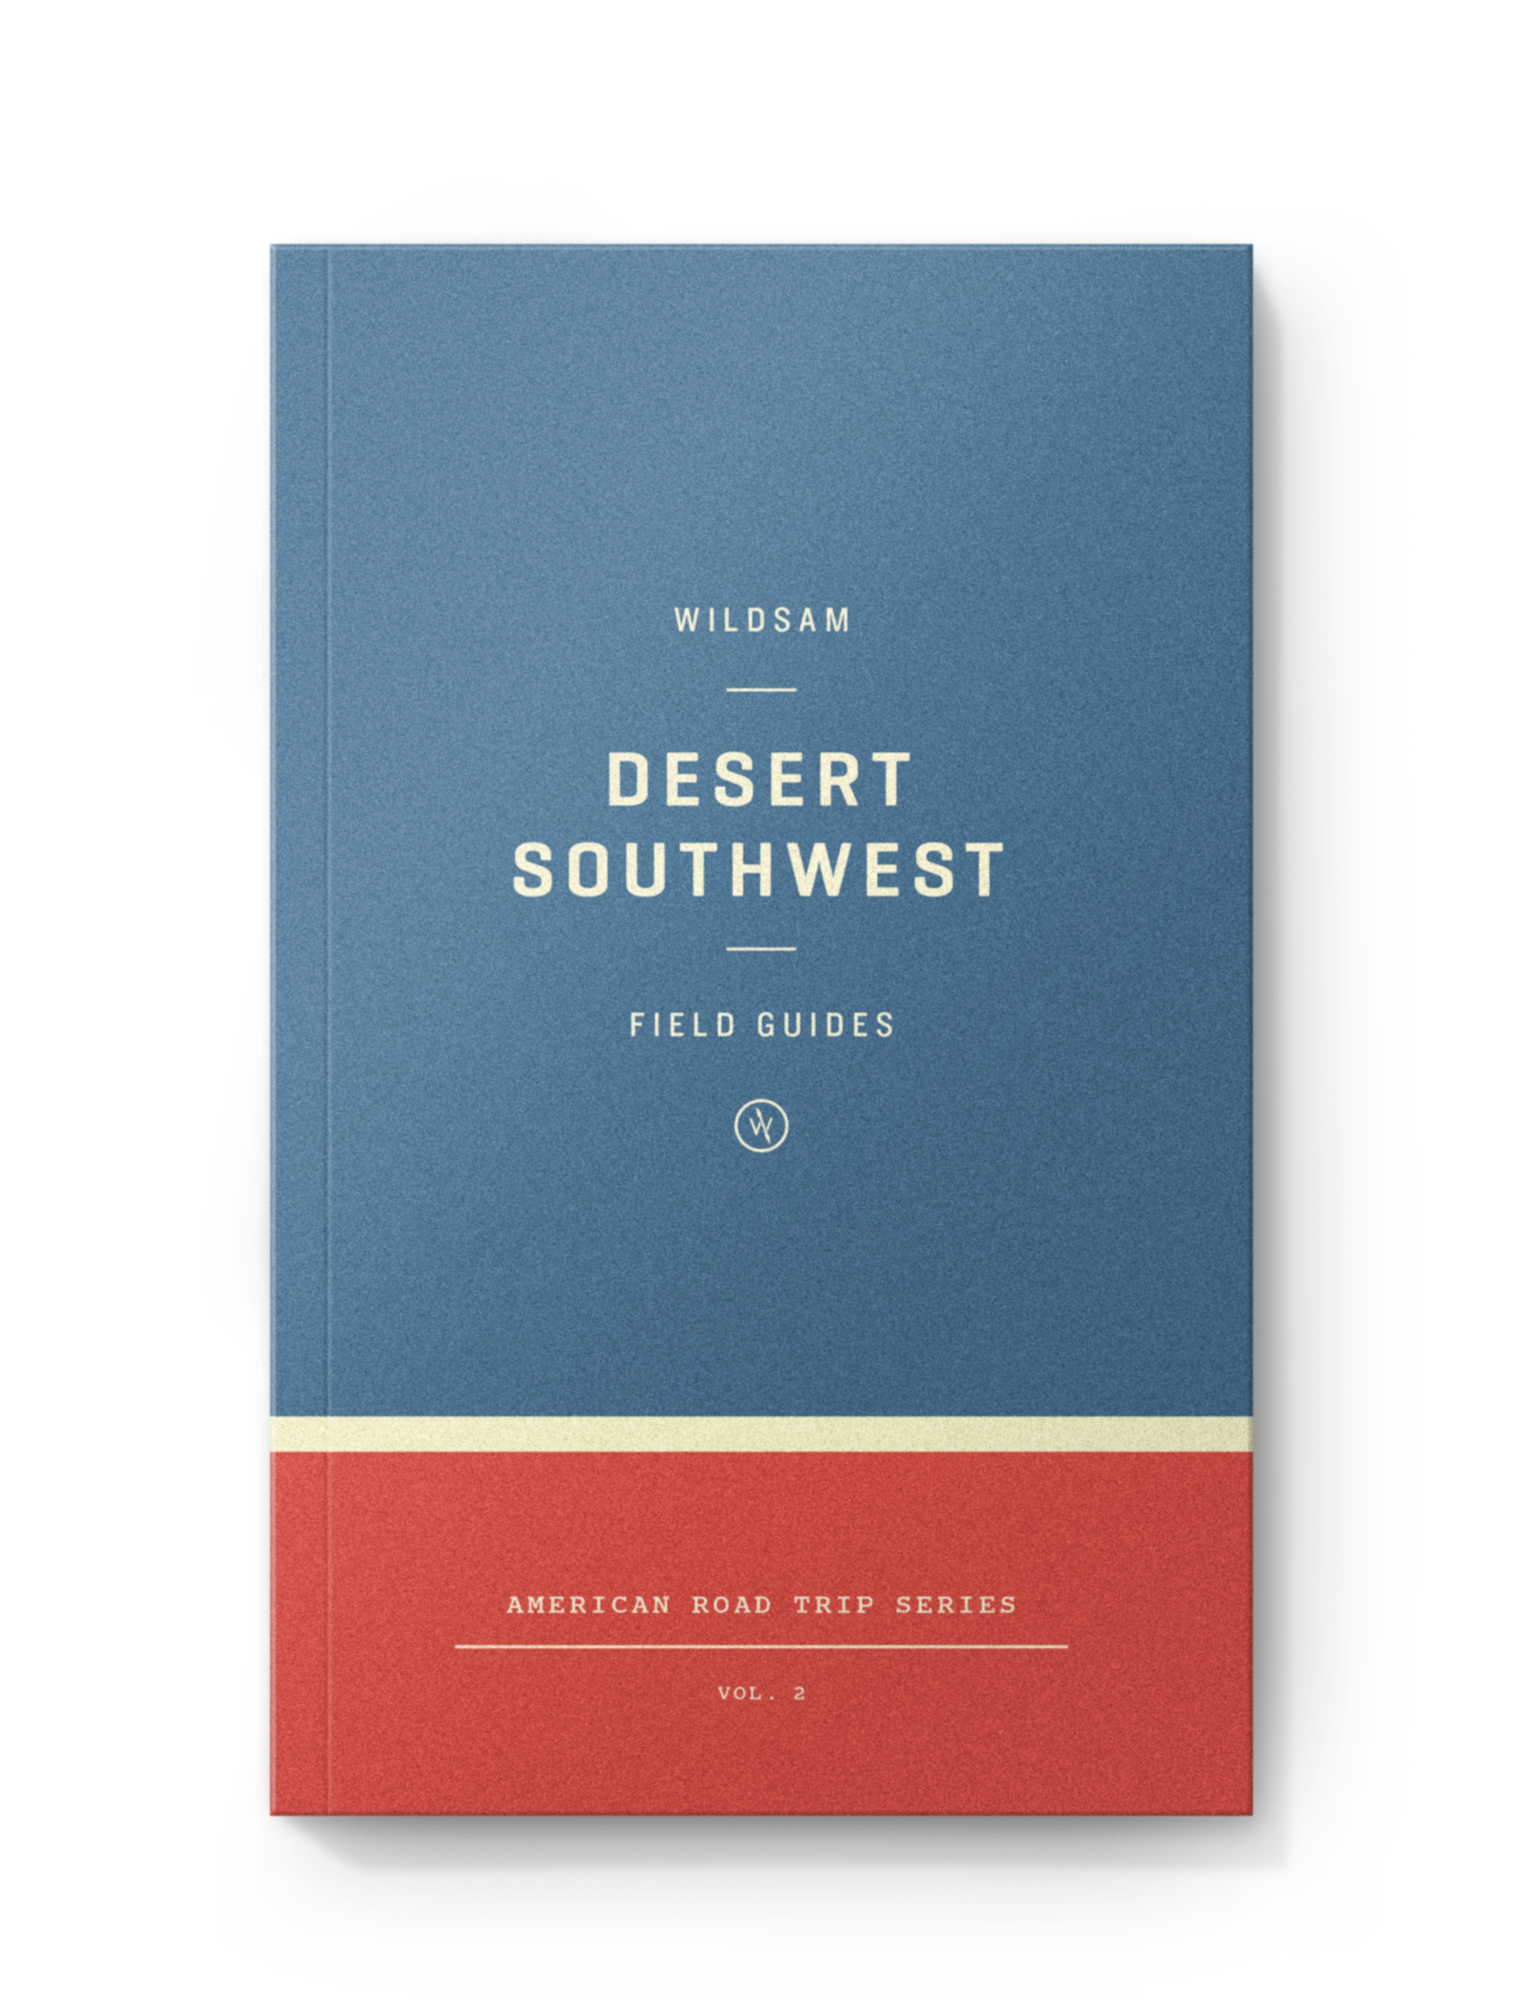 DESERT SOUTHWEST